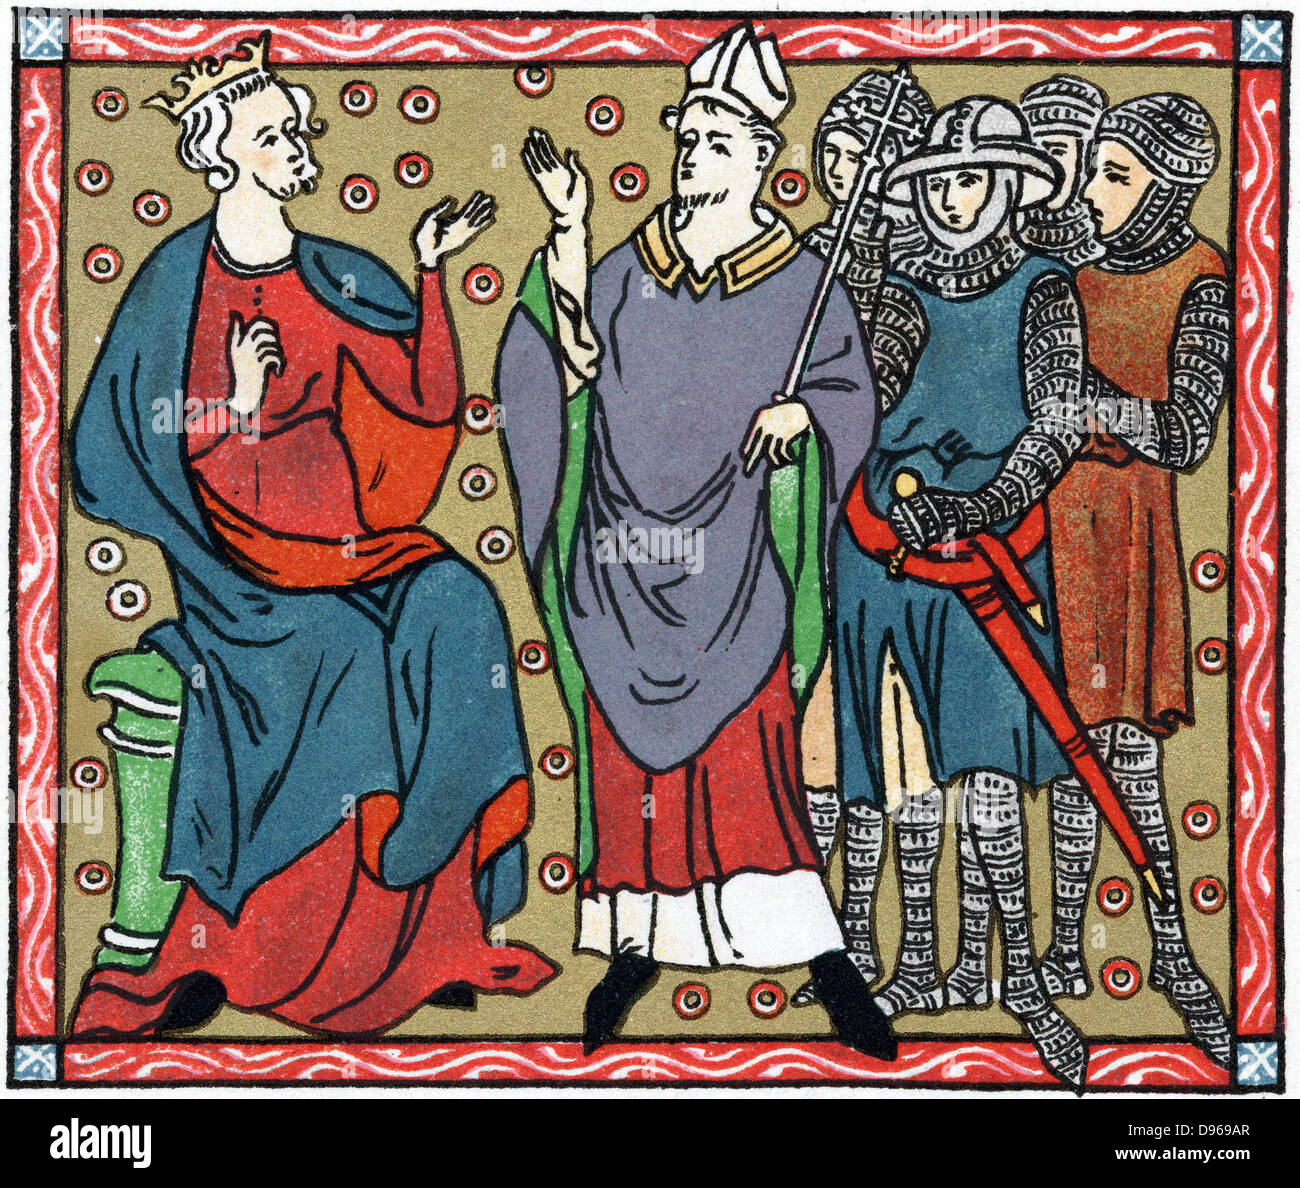 Enrico II (1133-1189), re d'Inghilterra dal 1154: Henry contestazione con Thomas a Becket (1118-1170) l'Arcivescovo di Canterbury. Inviate le figure sono quattro cavalieri che hanno assassinato Becket. Chromolithograph dopo il manoscritto medievale. Foto Stock